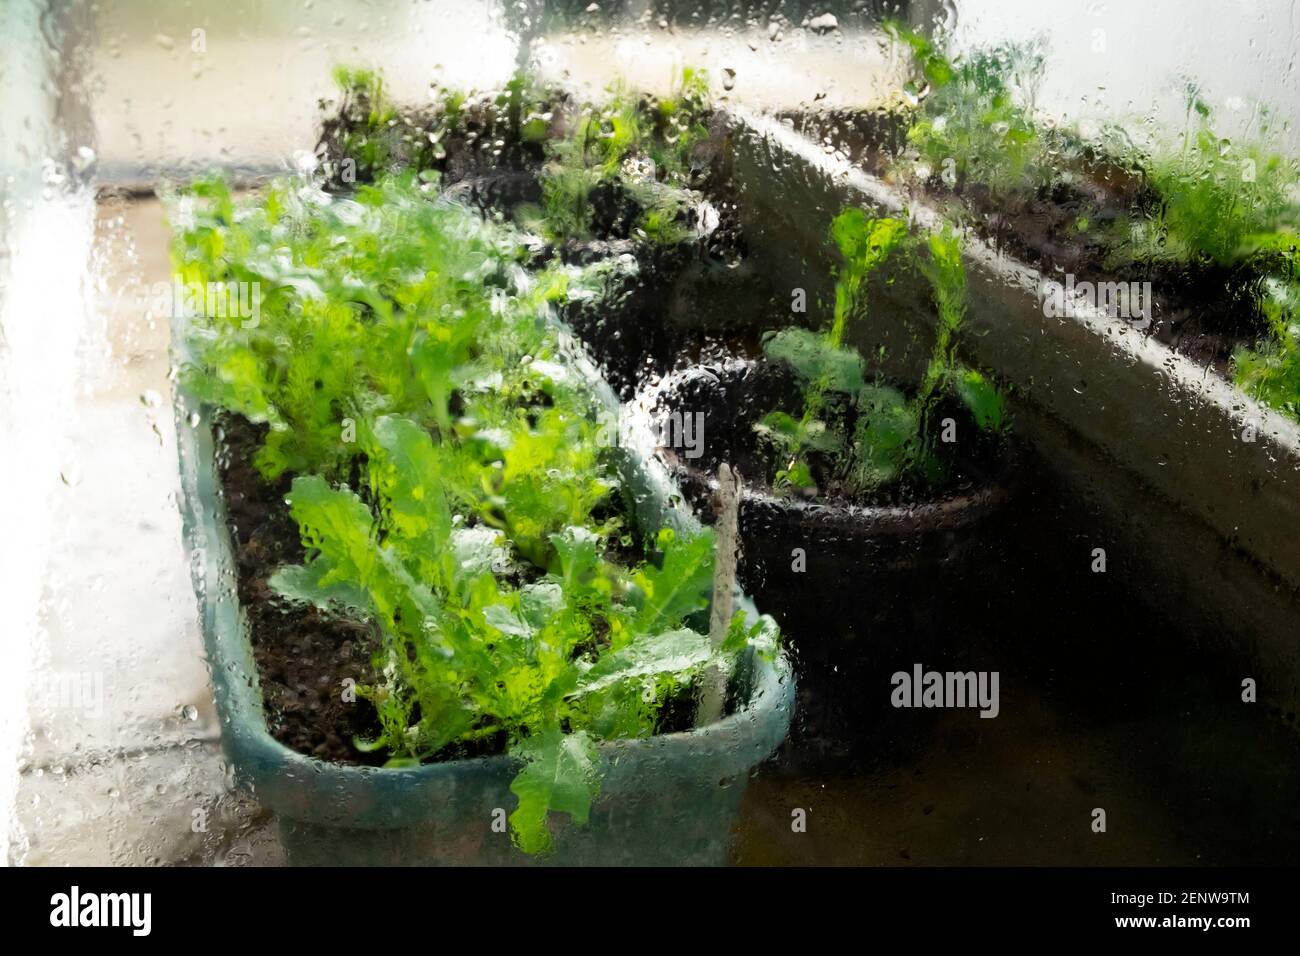 Vista esterna delle lattughe verdi che crescono in contenitori di plastica all'interno di una serra e gocce d'acqua su lastre di vetro In Galles Regno Unito KATHY DEWITT Foto Stock